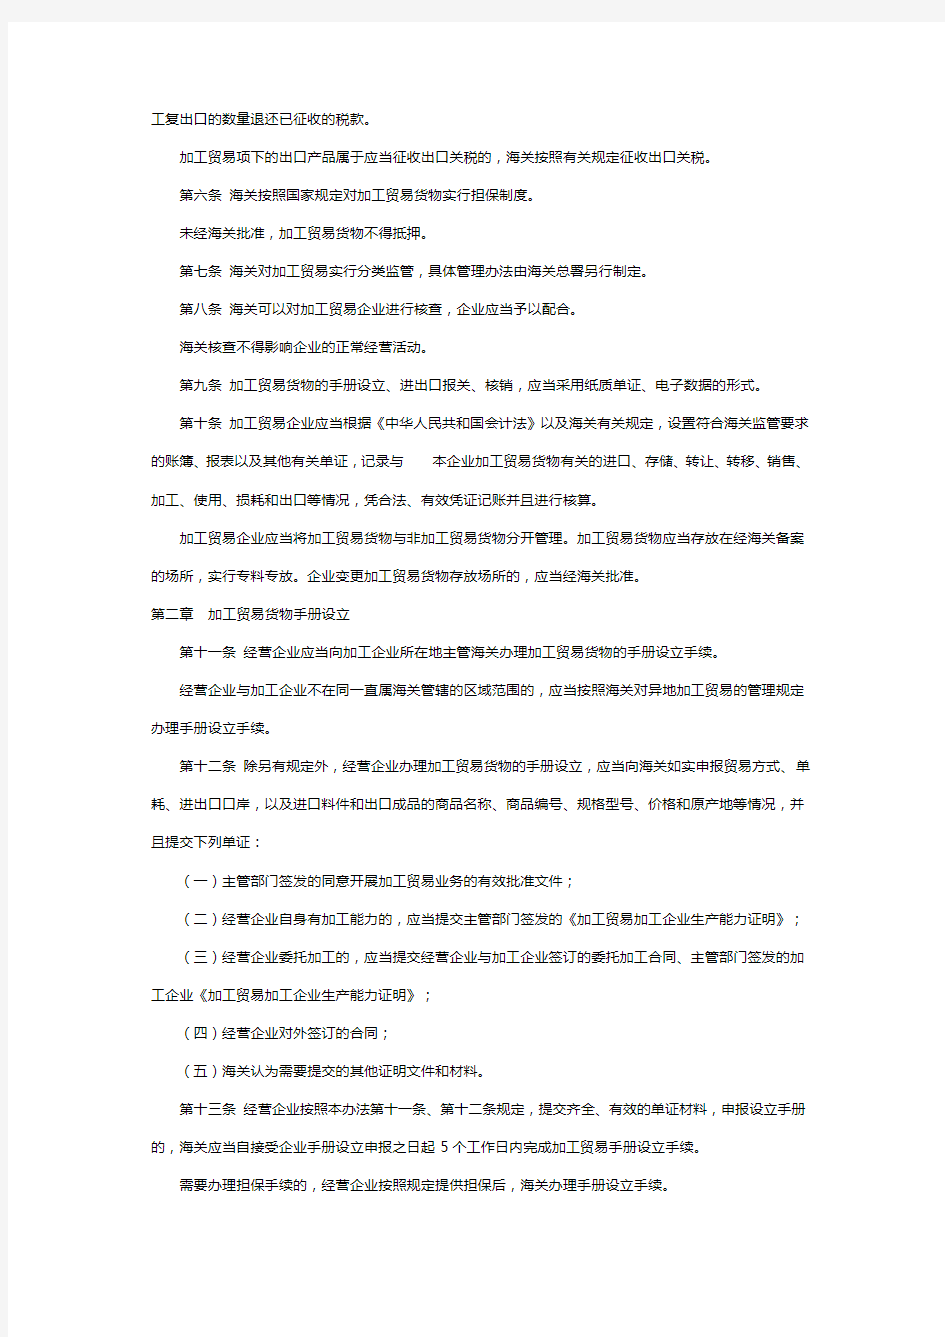 海关总署令第219号-中华人民共和国海关加工贸易货物监管办法